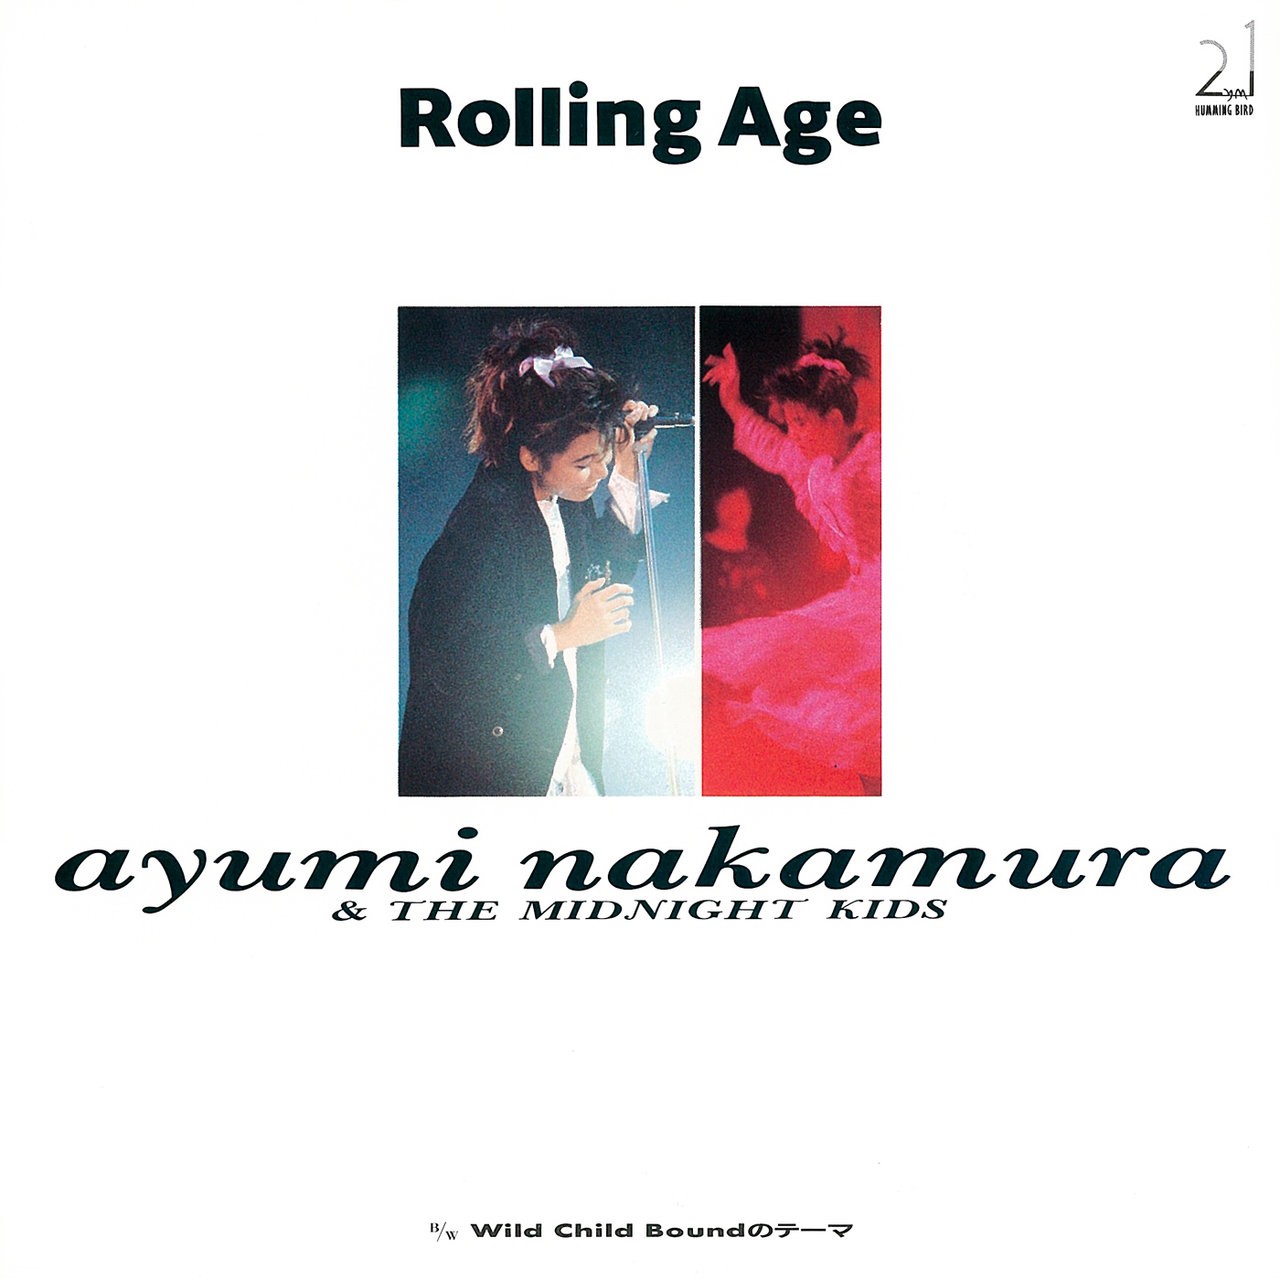 中村あゆみ (Ayumi Nakamura) – Rolling Age ⁄ Wild Child Boundのテーマ (2019 Remastered) (1987/2019) [FLAC 24bit/48kHz]